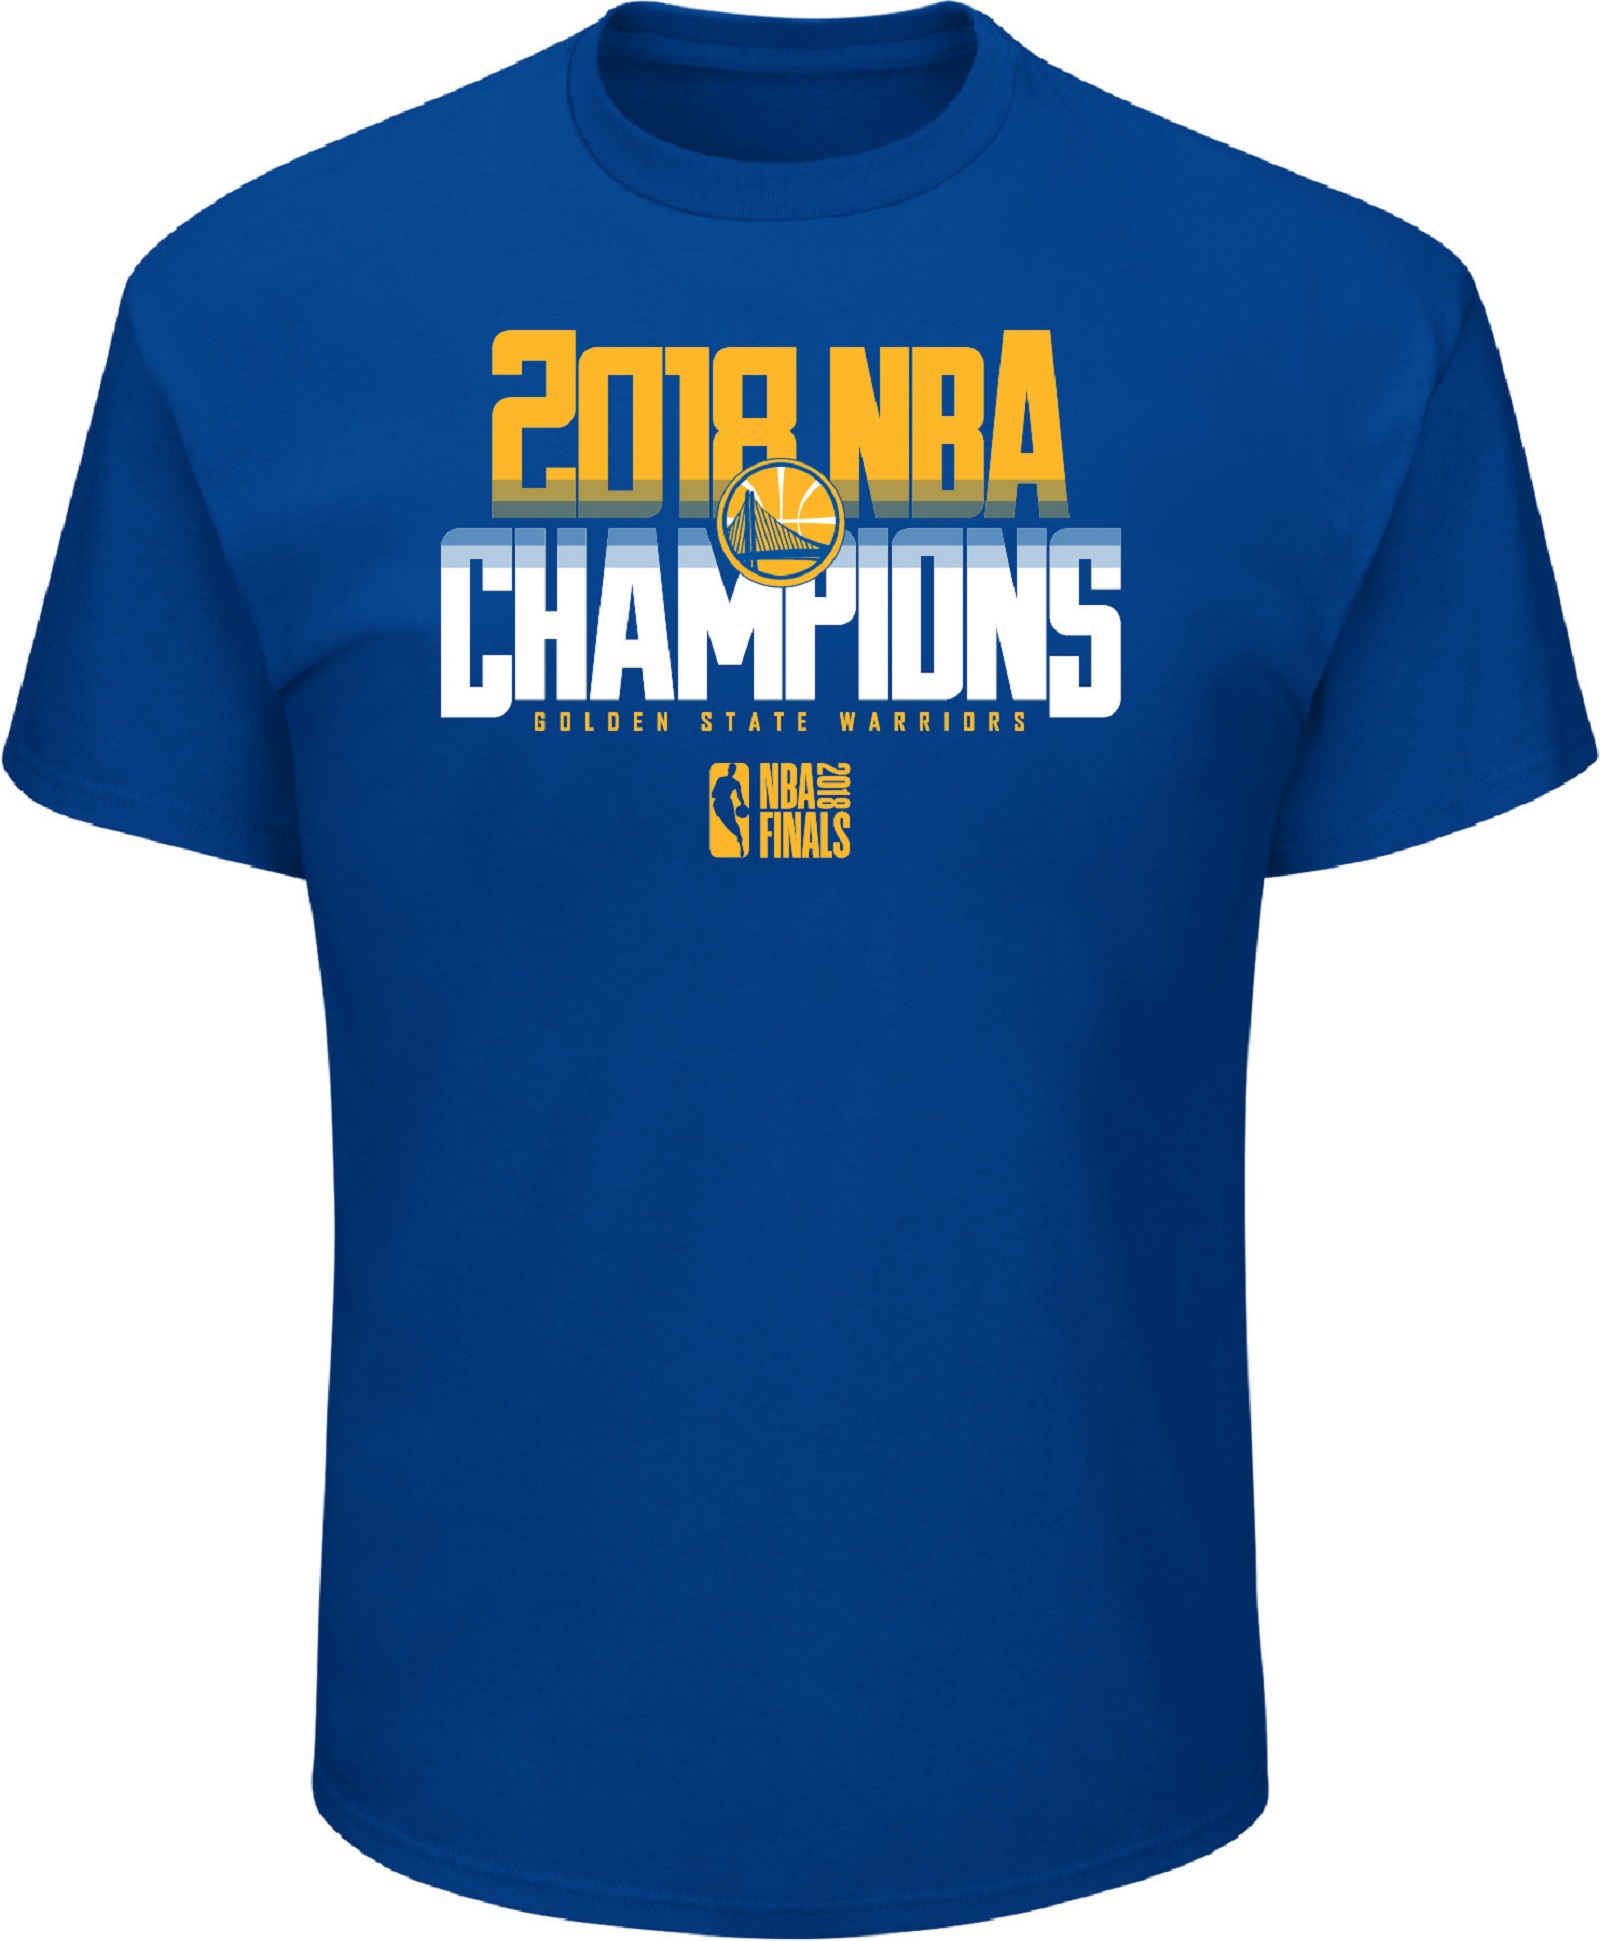 warriors champion shirt